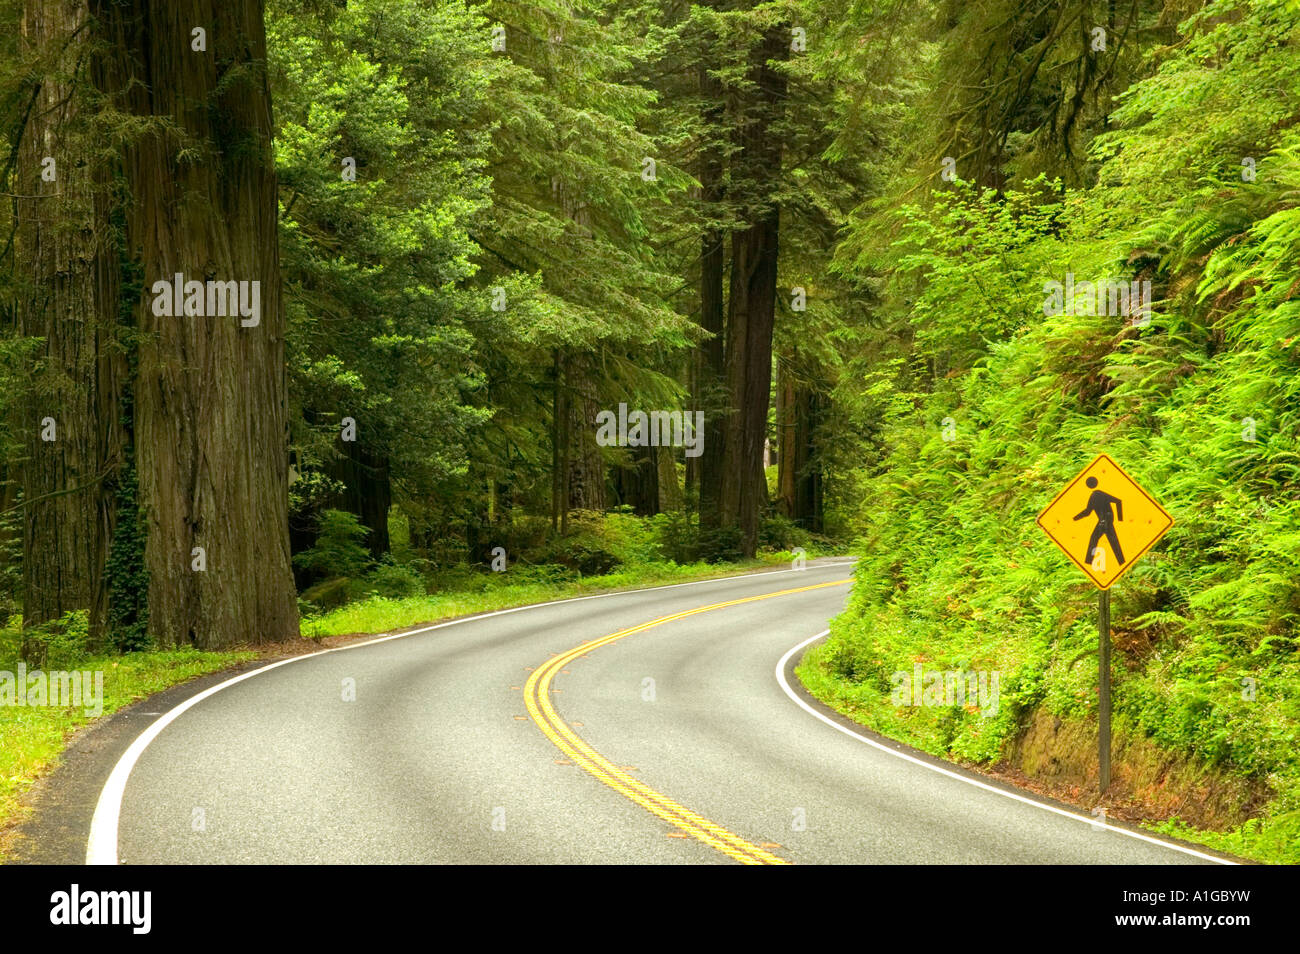 Autostrada curva, attraversamento pedonale segno. Foto Stock